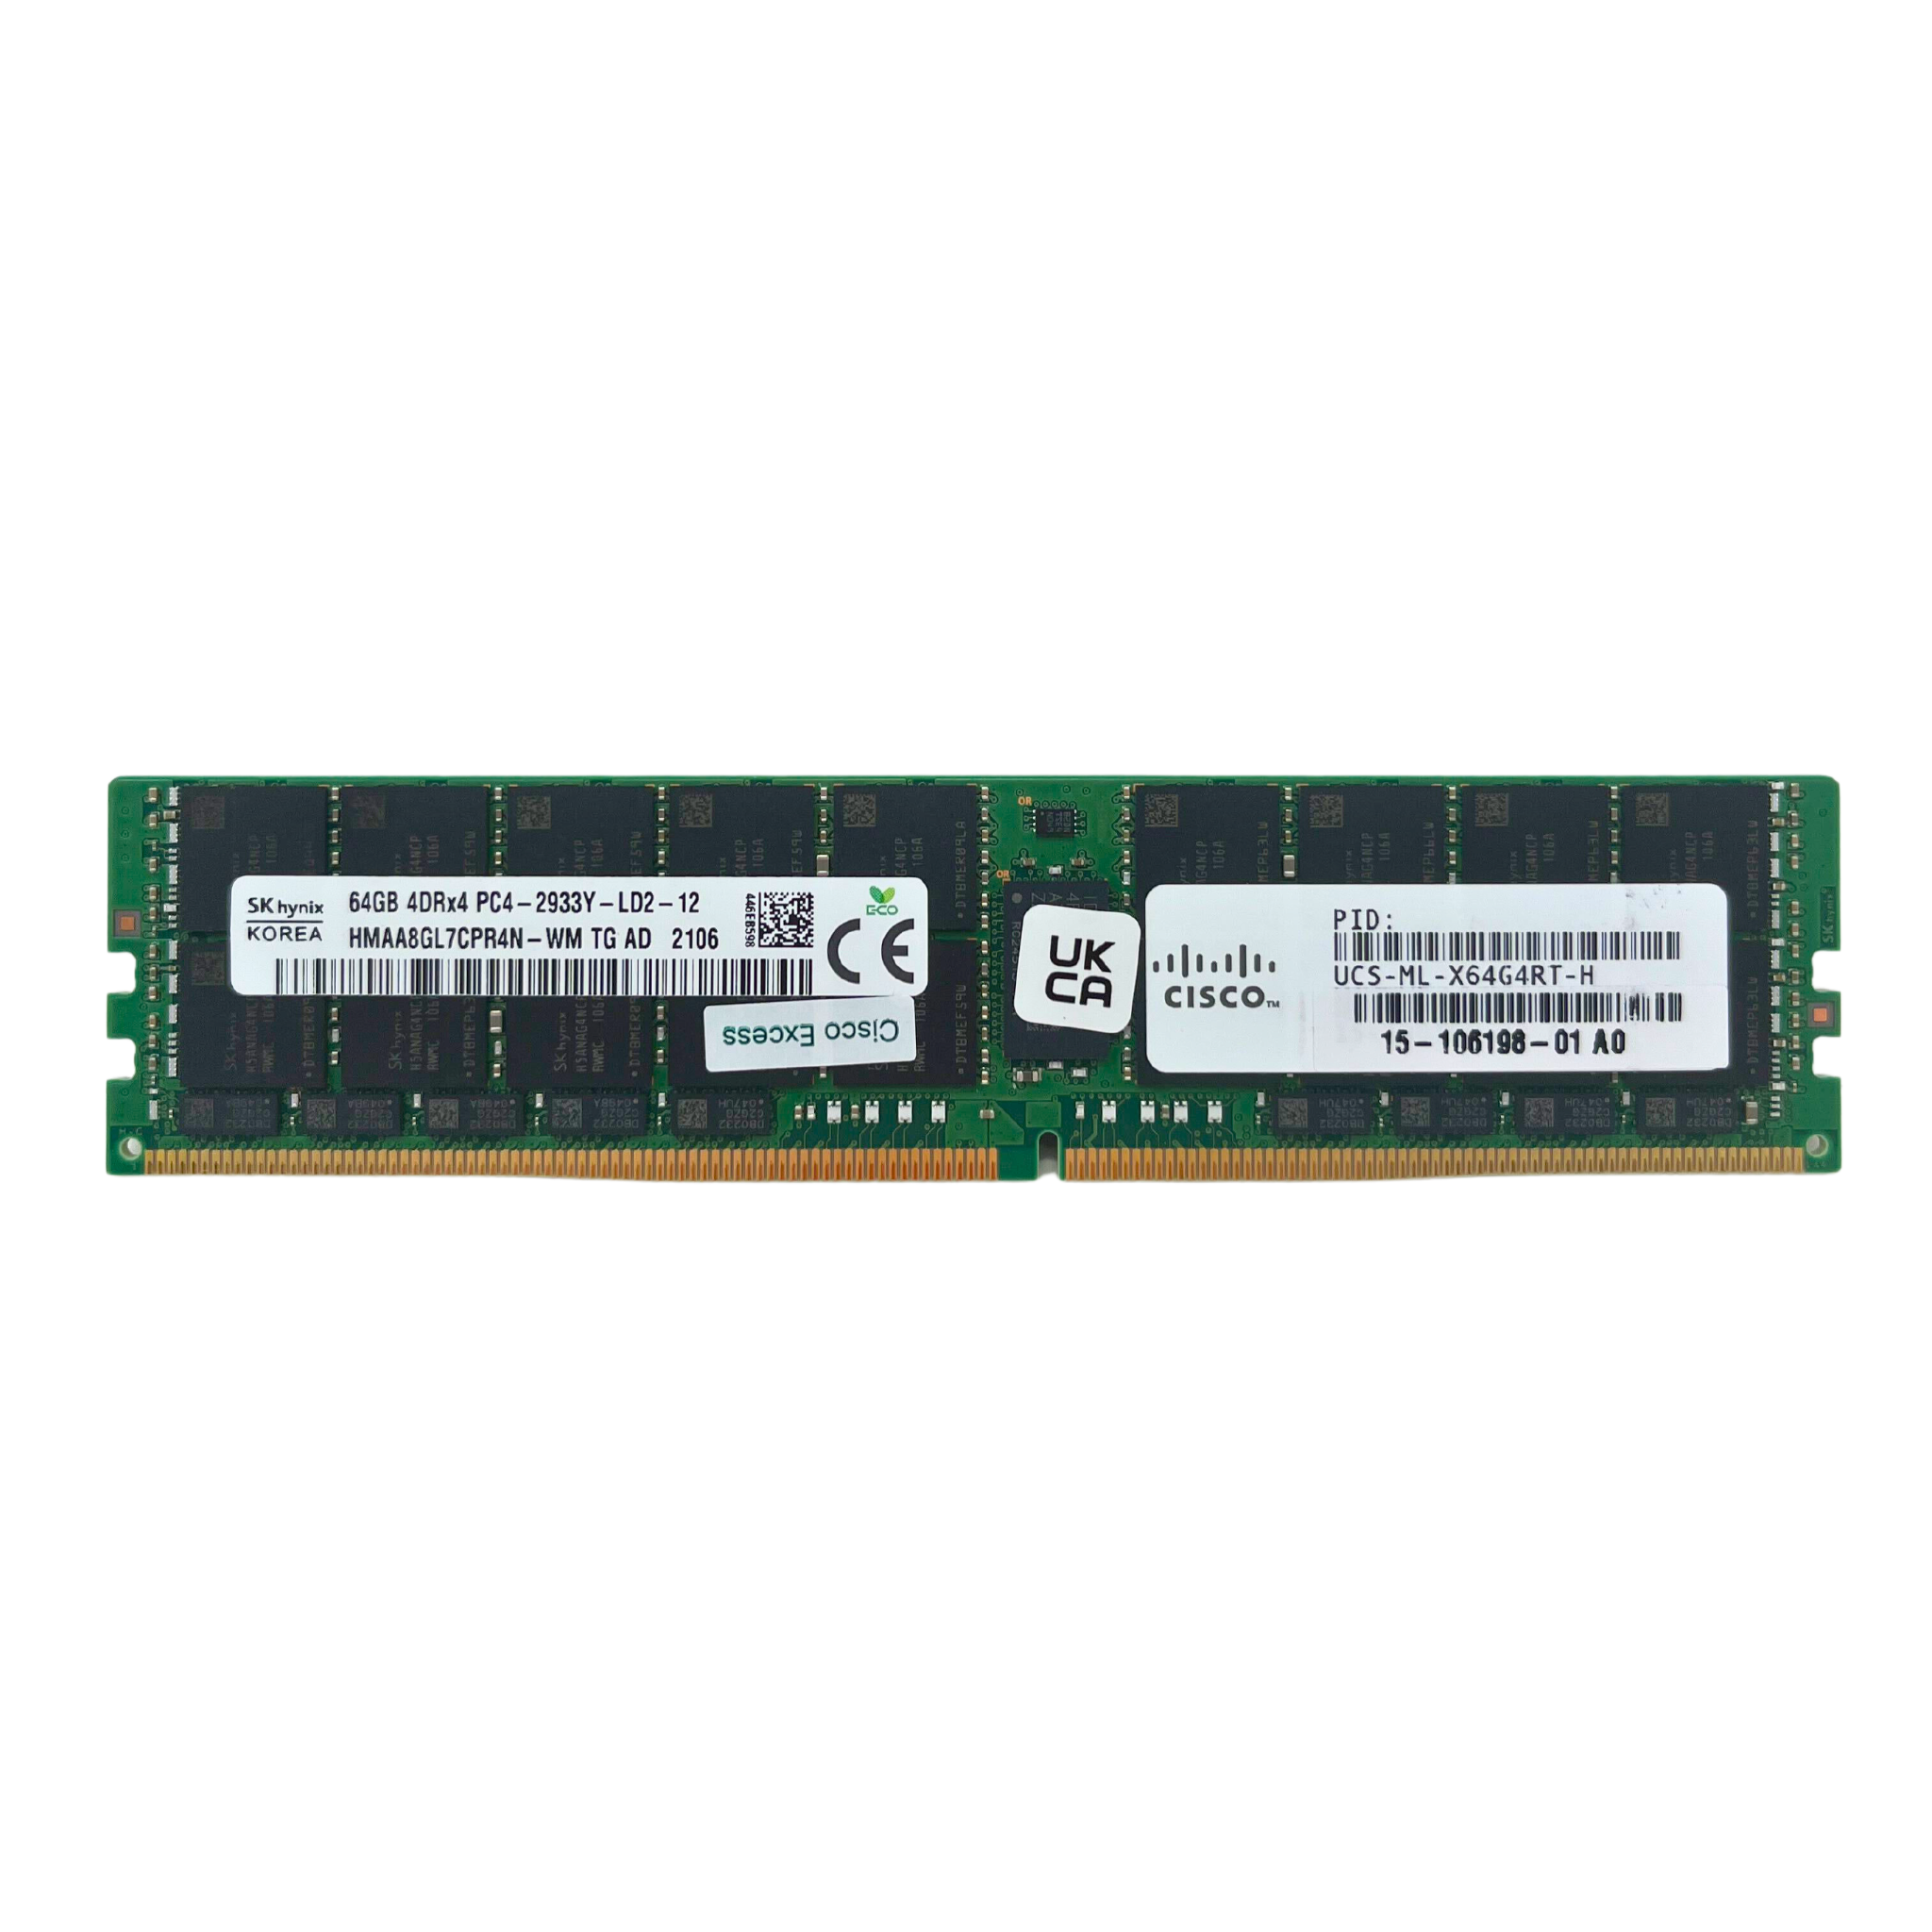 Cisco 64GB 4DRX4 PC4-2933Y  ECC  Registered  LRDIMM Memory  (HMAA8GL7CPR4N-WM T4-CISCO)